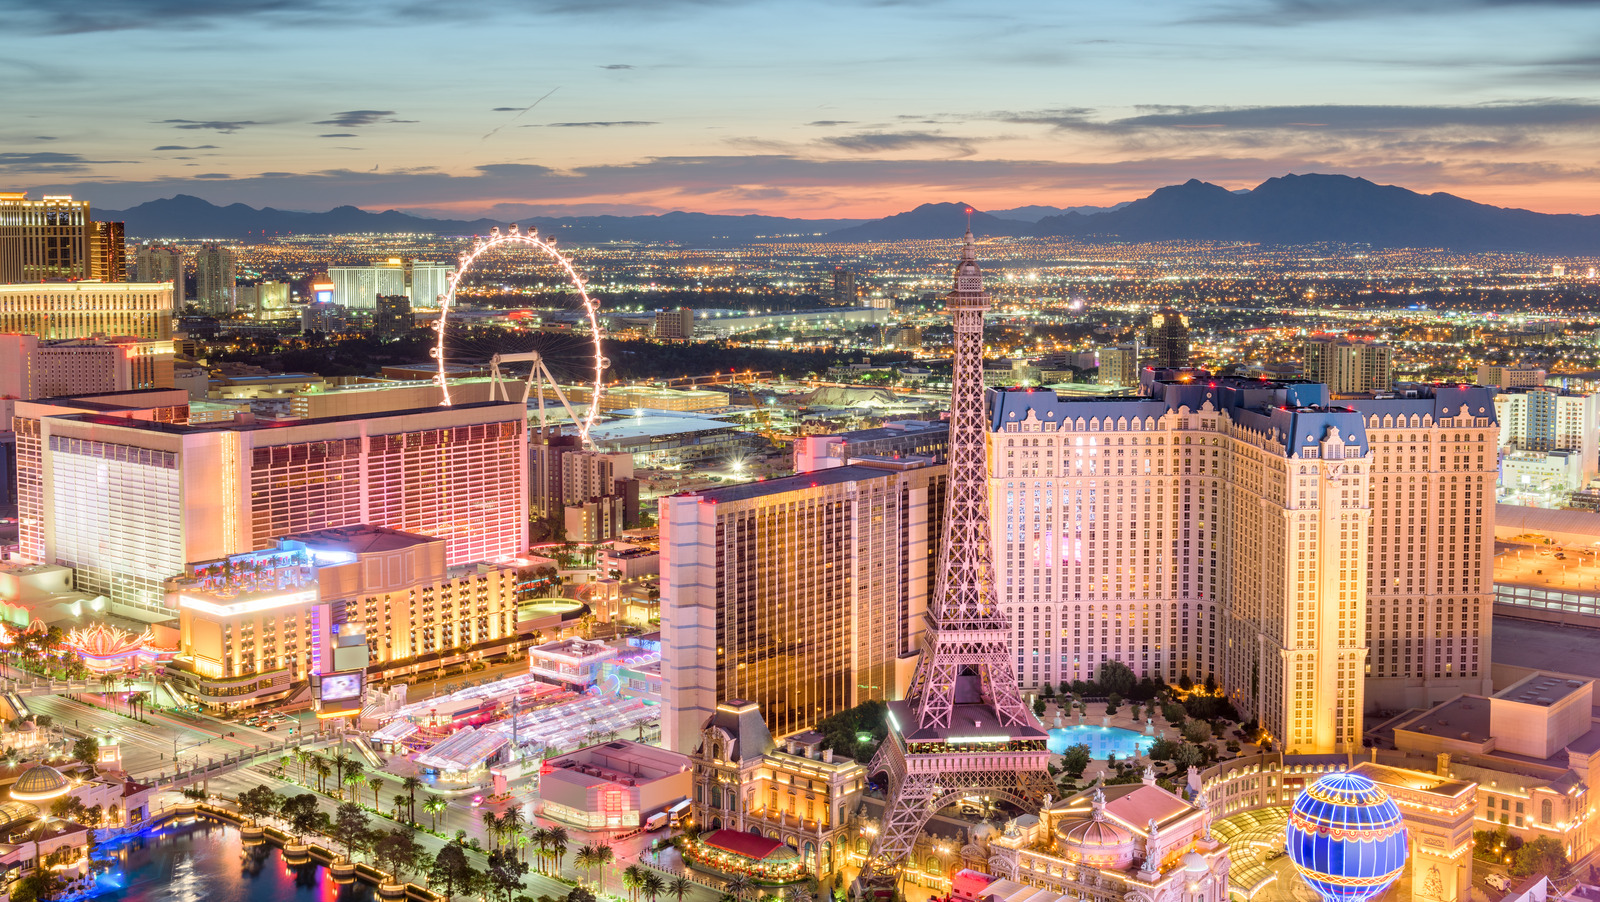 12 Unique Places to Visit Near Las Vegas